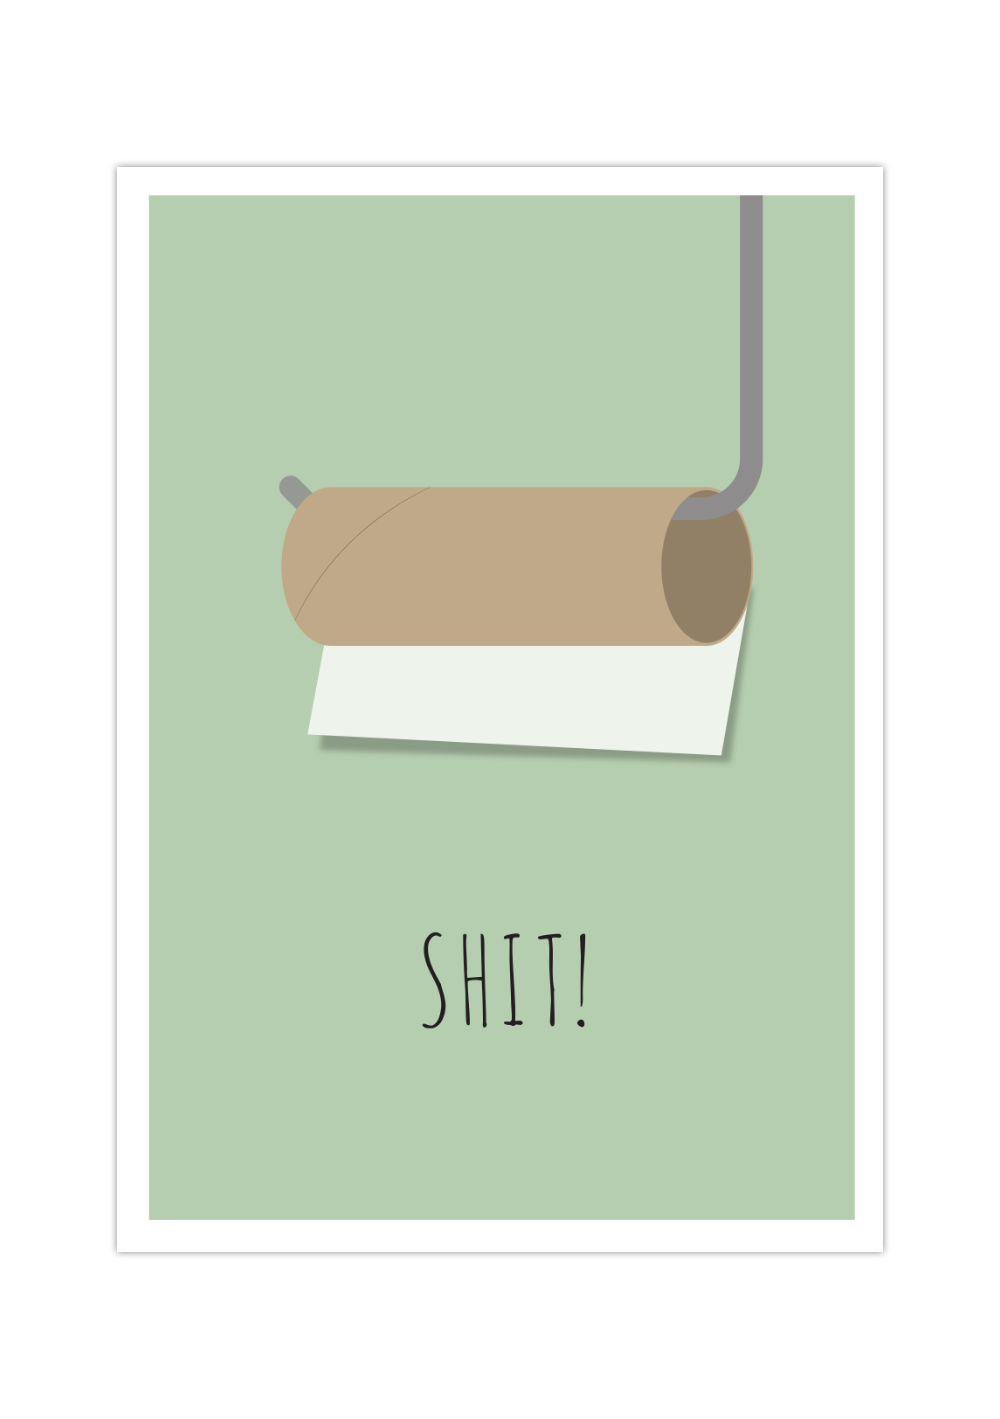 Das witzige Poster zeigt dir eine minimalistische Darstellung einer leeren Toilettenpapierrolle mit Halterung. 